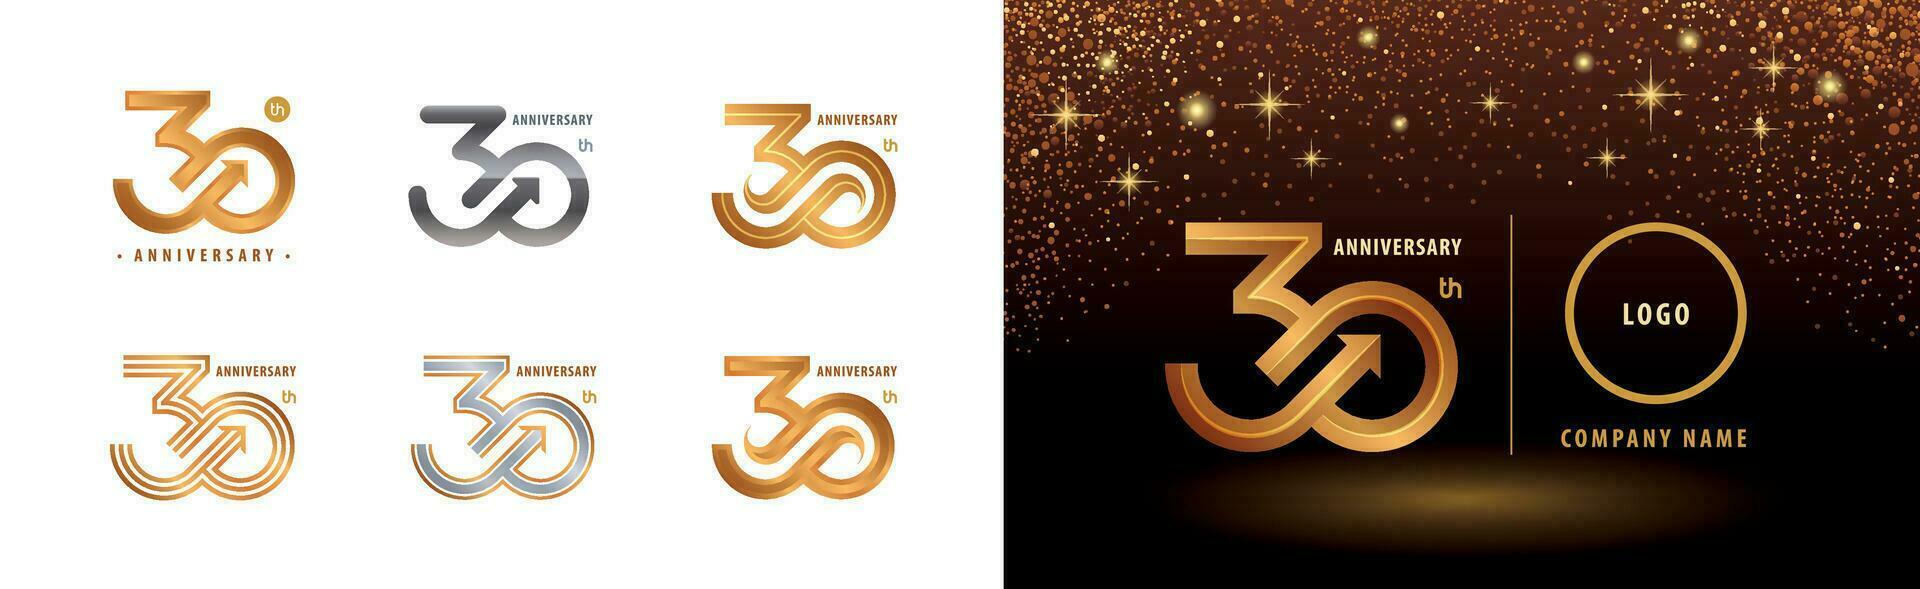 einstellen von 30 Jahrestag Logo Design, dreißig Jahre Jahrestag Feier vektor